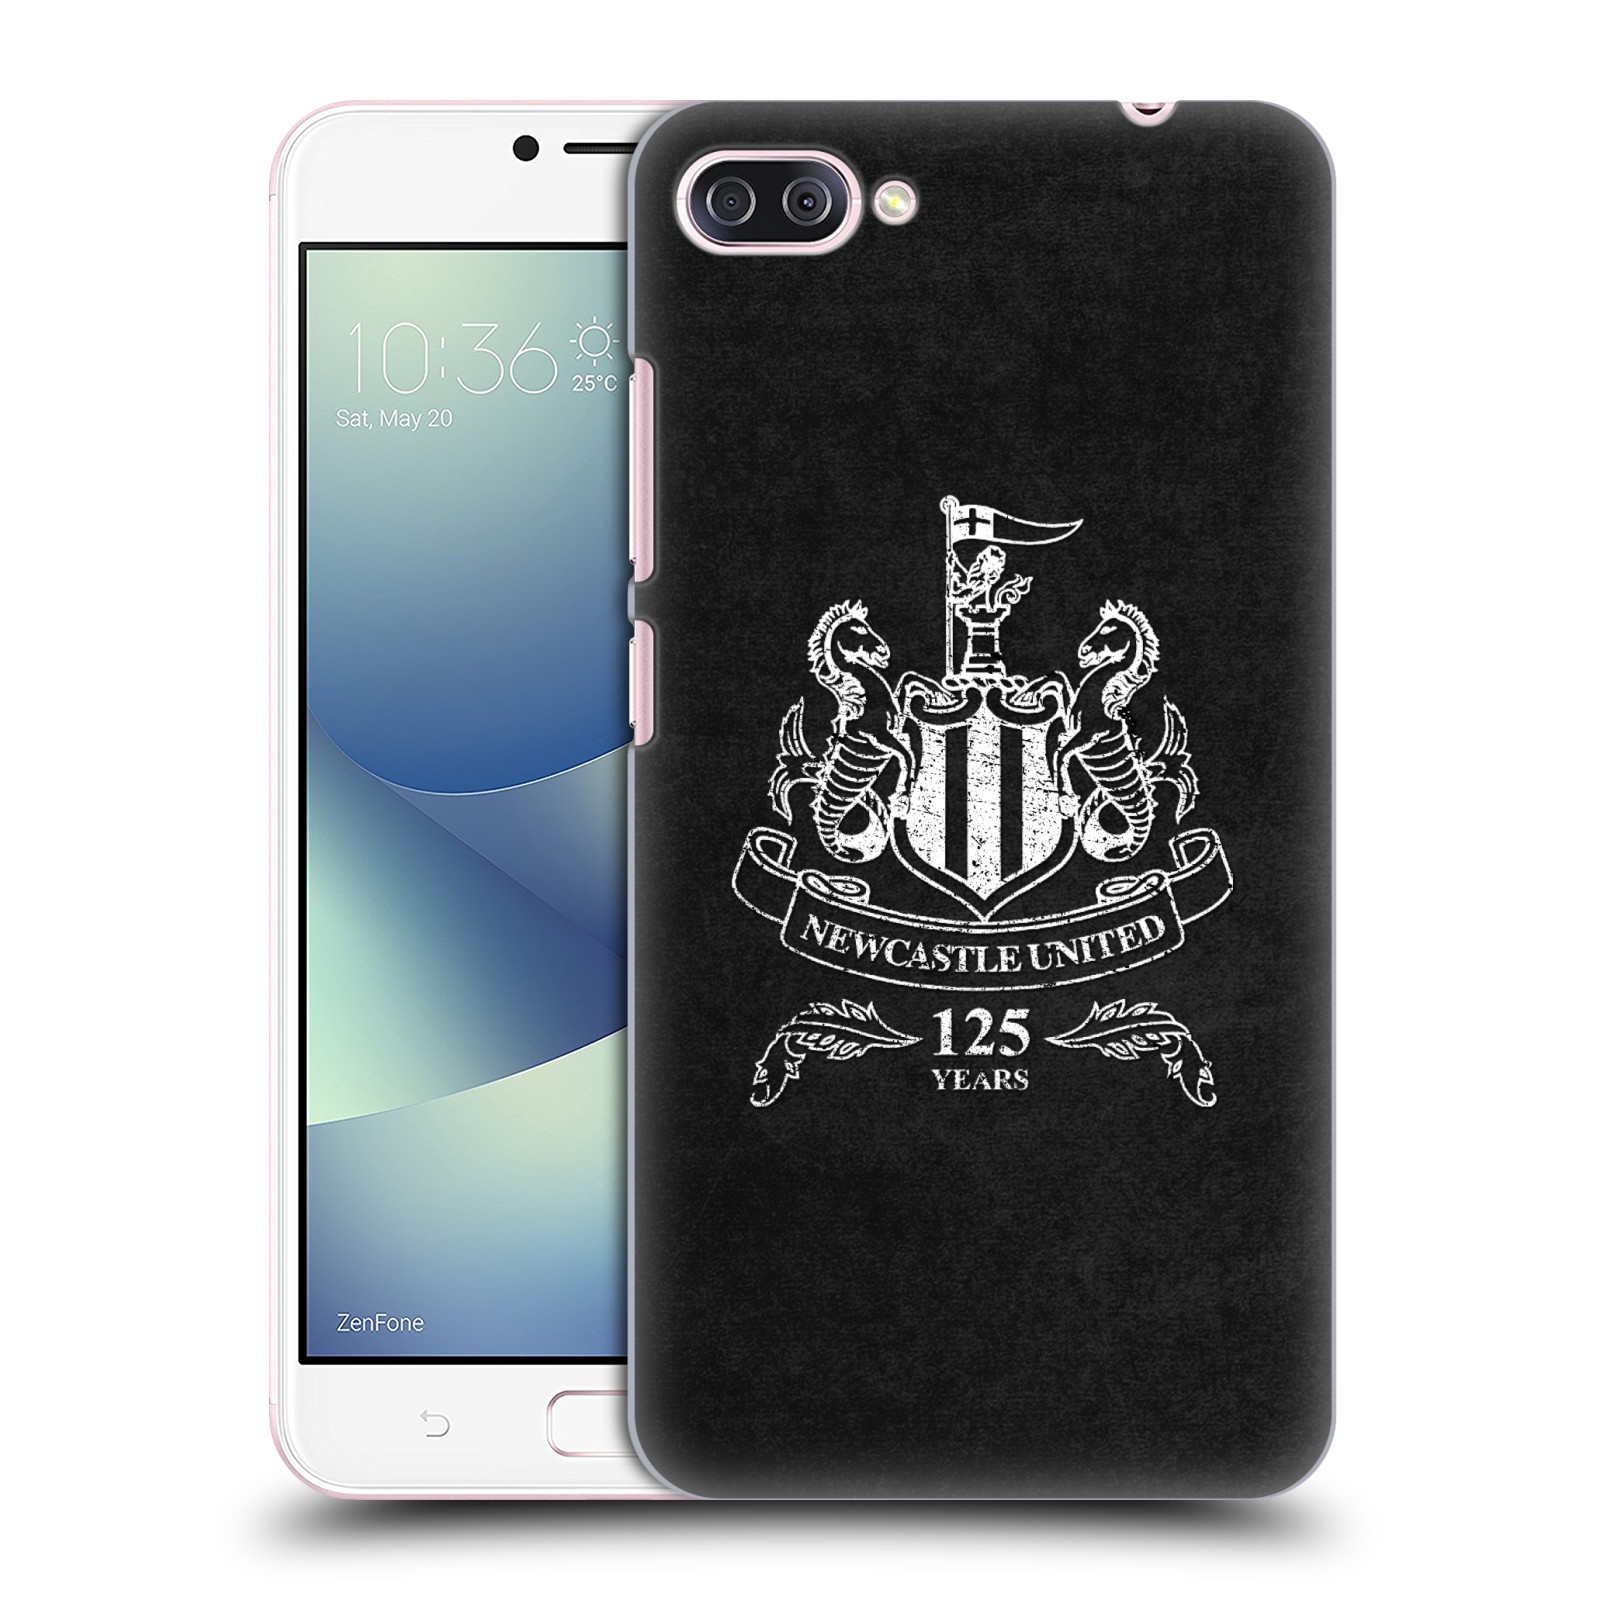 Zadní obal pro mobil Asus Zenfone 4 MAX / 4 MAX PRO (ZC554KL) - HEAD CASE - Fotbalové týmy - Newcastle United FC - černá